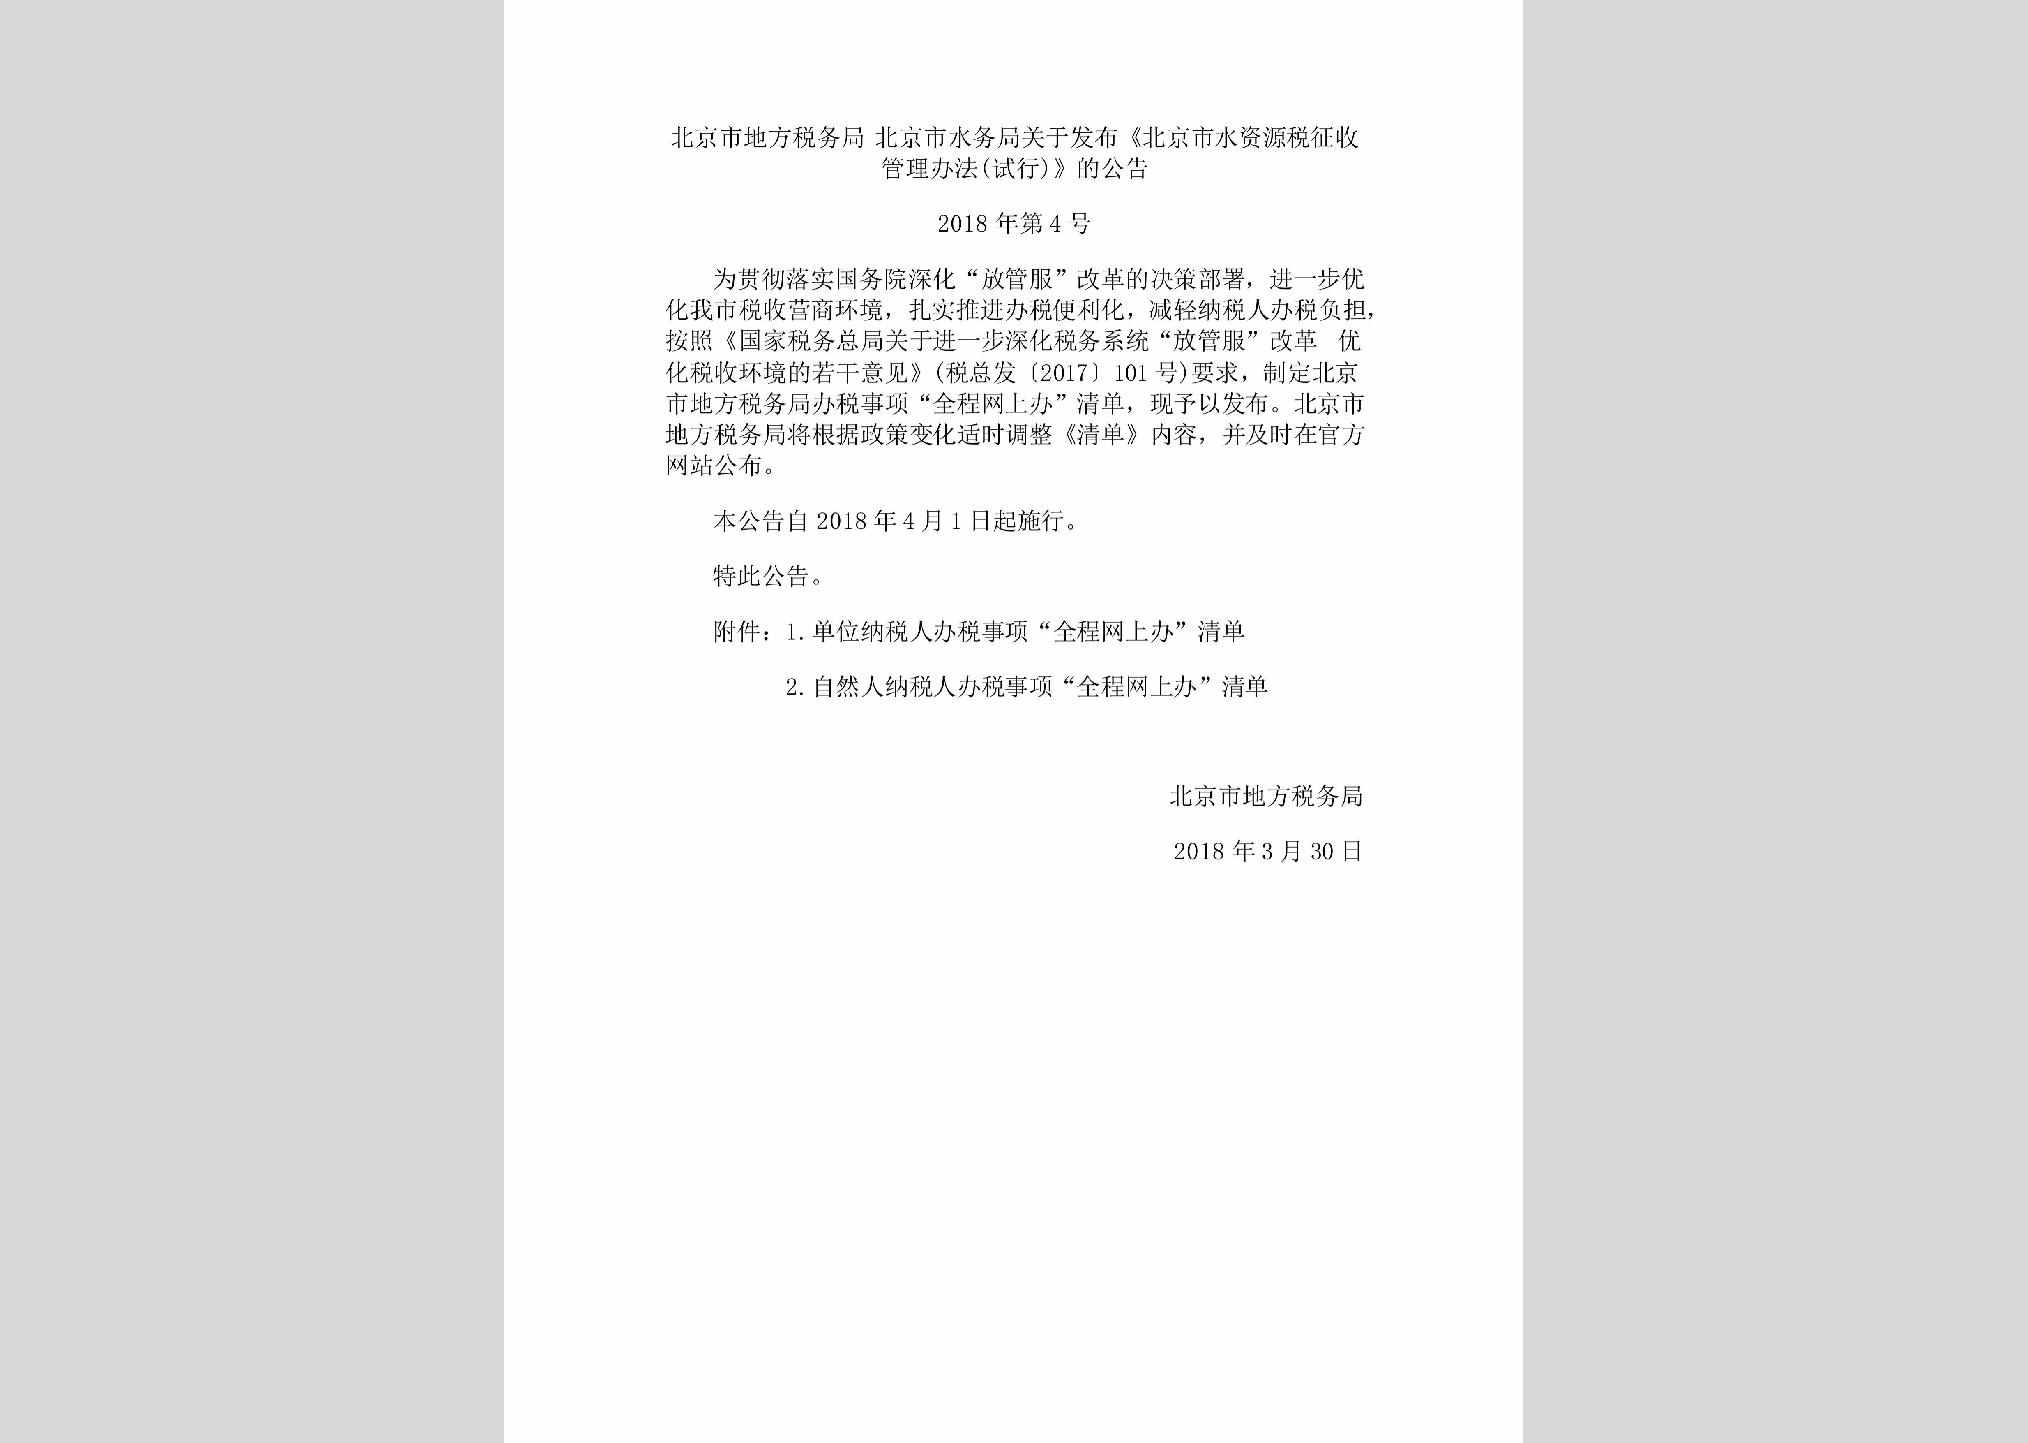 BJ-DFSWBFGG-2018：北京市地方税务局北京市水务局关于发布《北京市水资源税征收管理办法(试行)》的公告